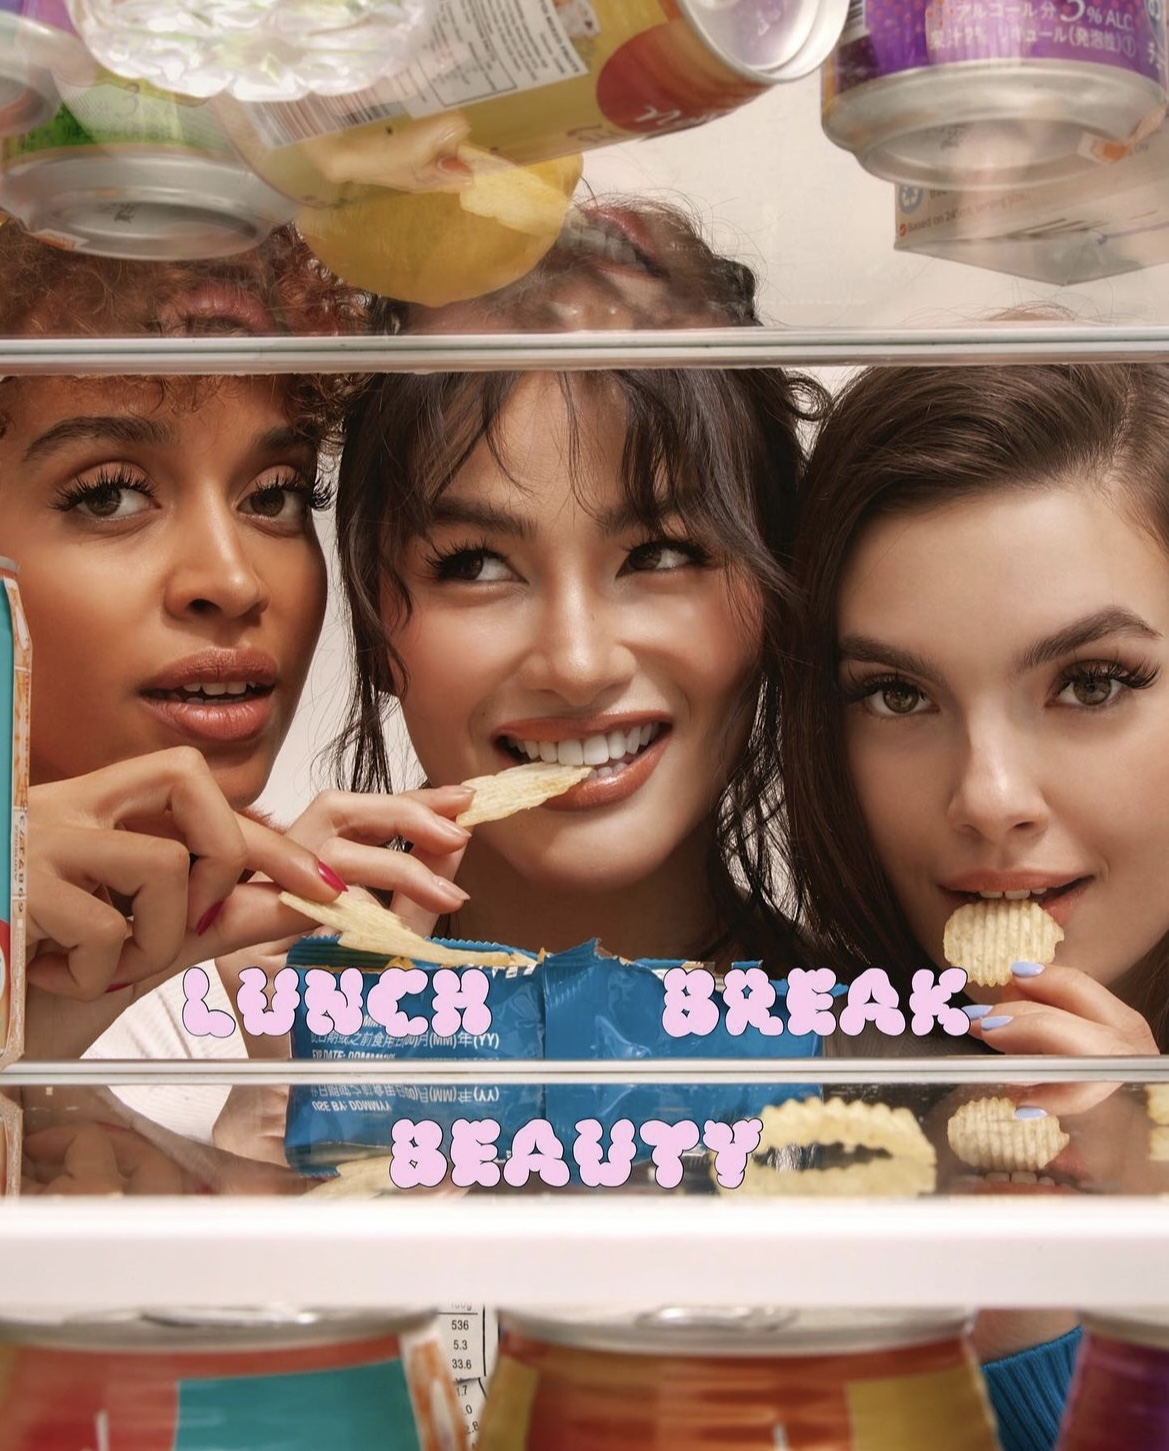 filipina celebrity beauty brand elisse joson lunch break beauty